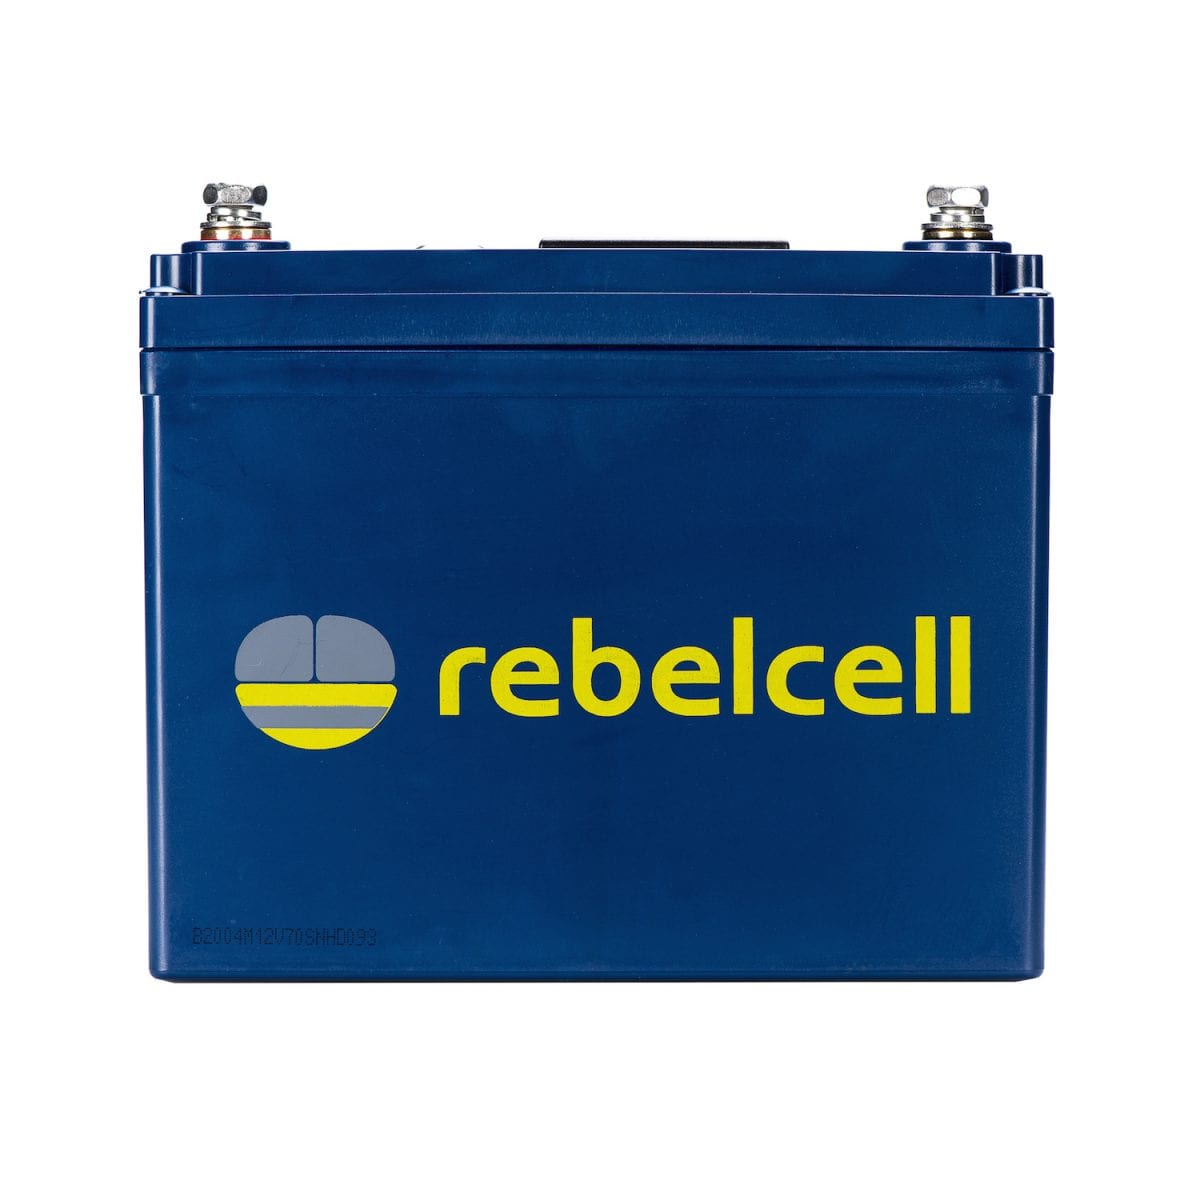 Rebelcel 12V35 AV product image